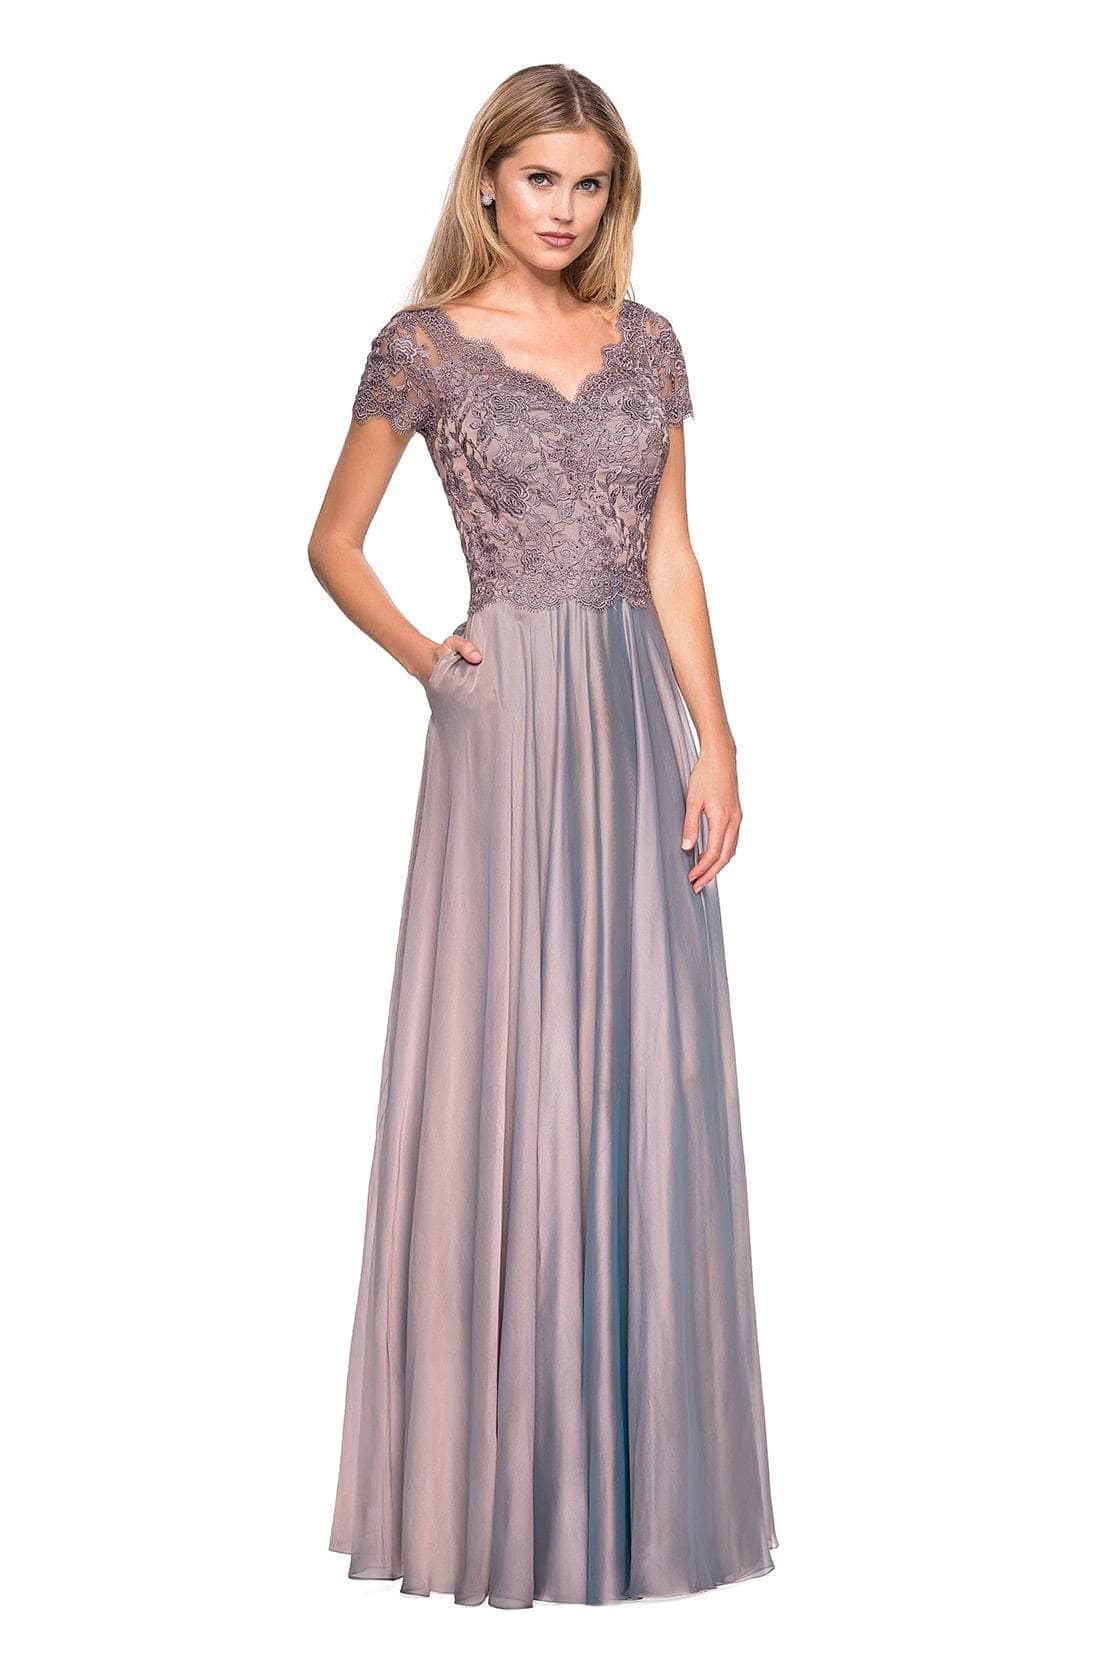 La Femme - 27098 Embordered Lace Bodice Chiffon A- Line Gown